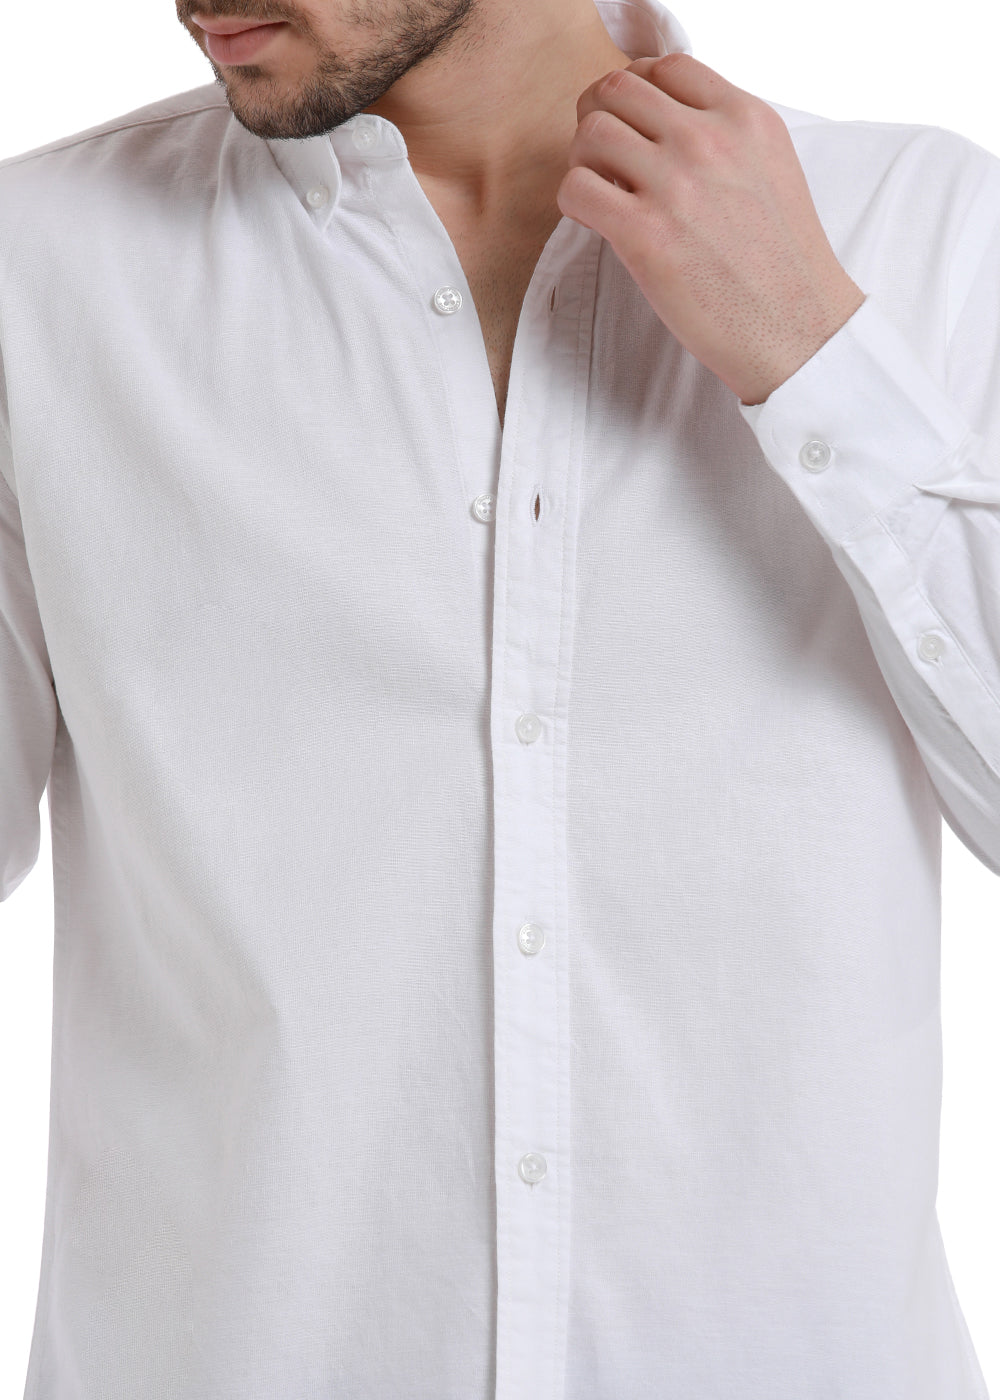 Shop Buy Breeze White Oxford Shirts